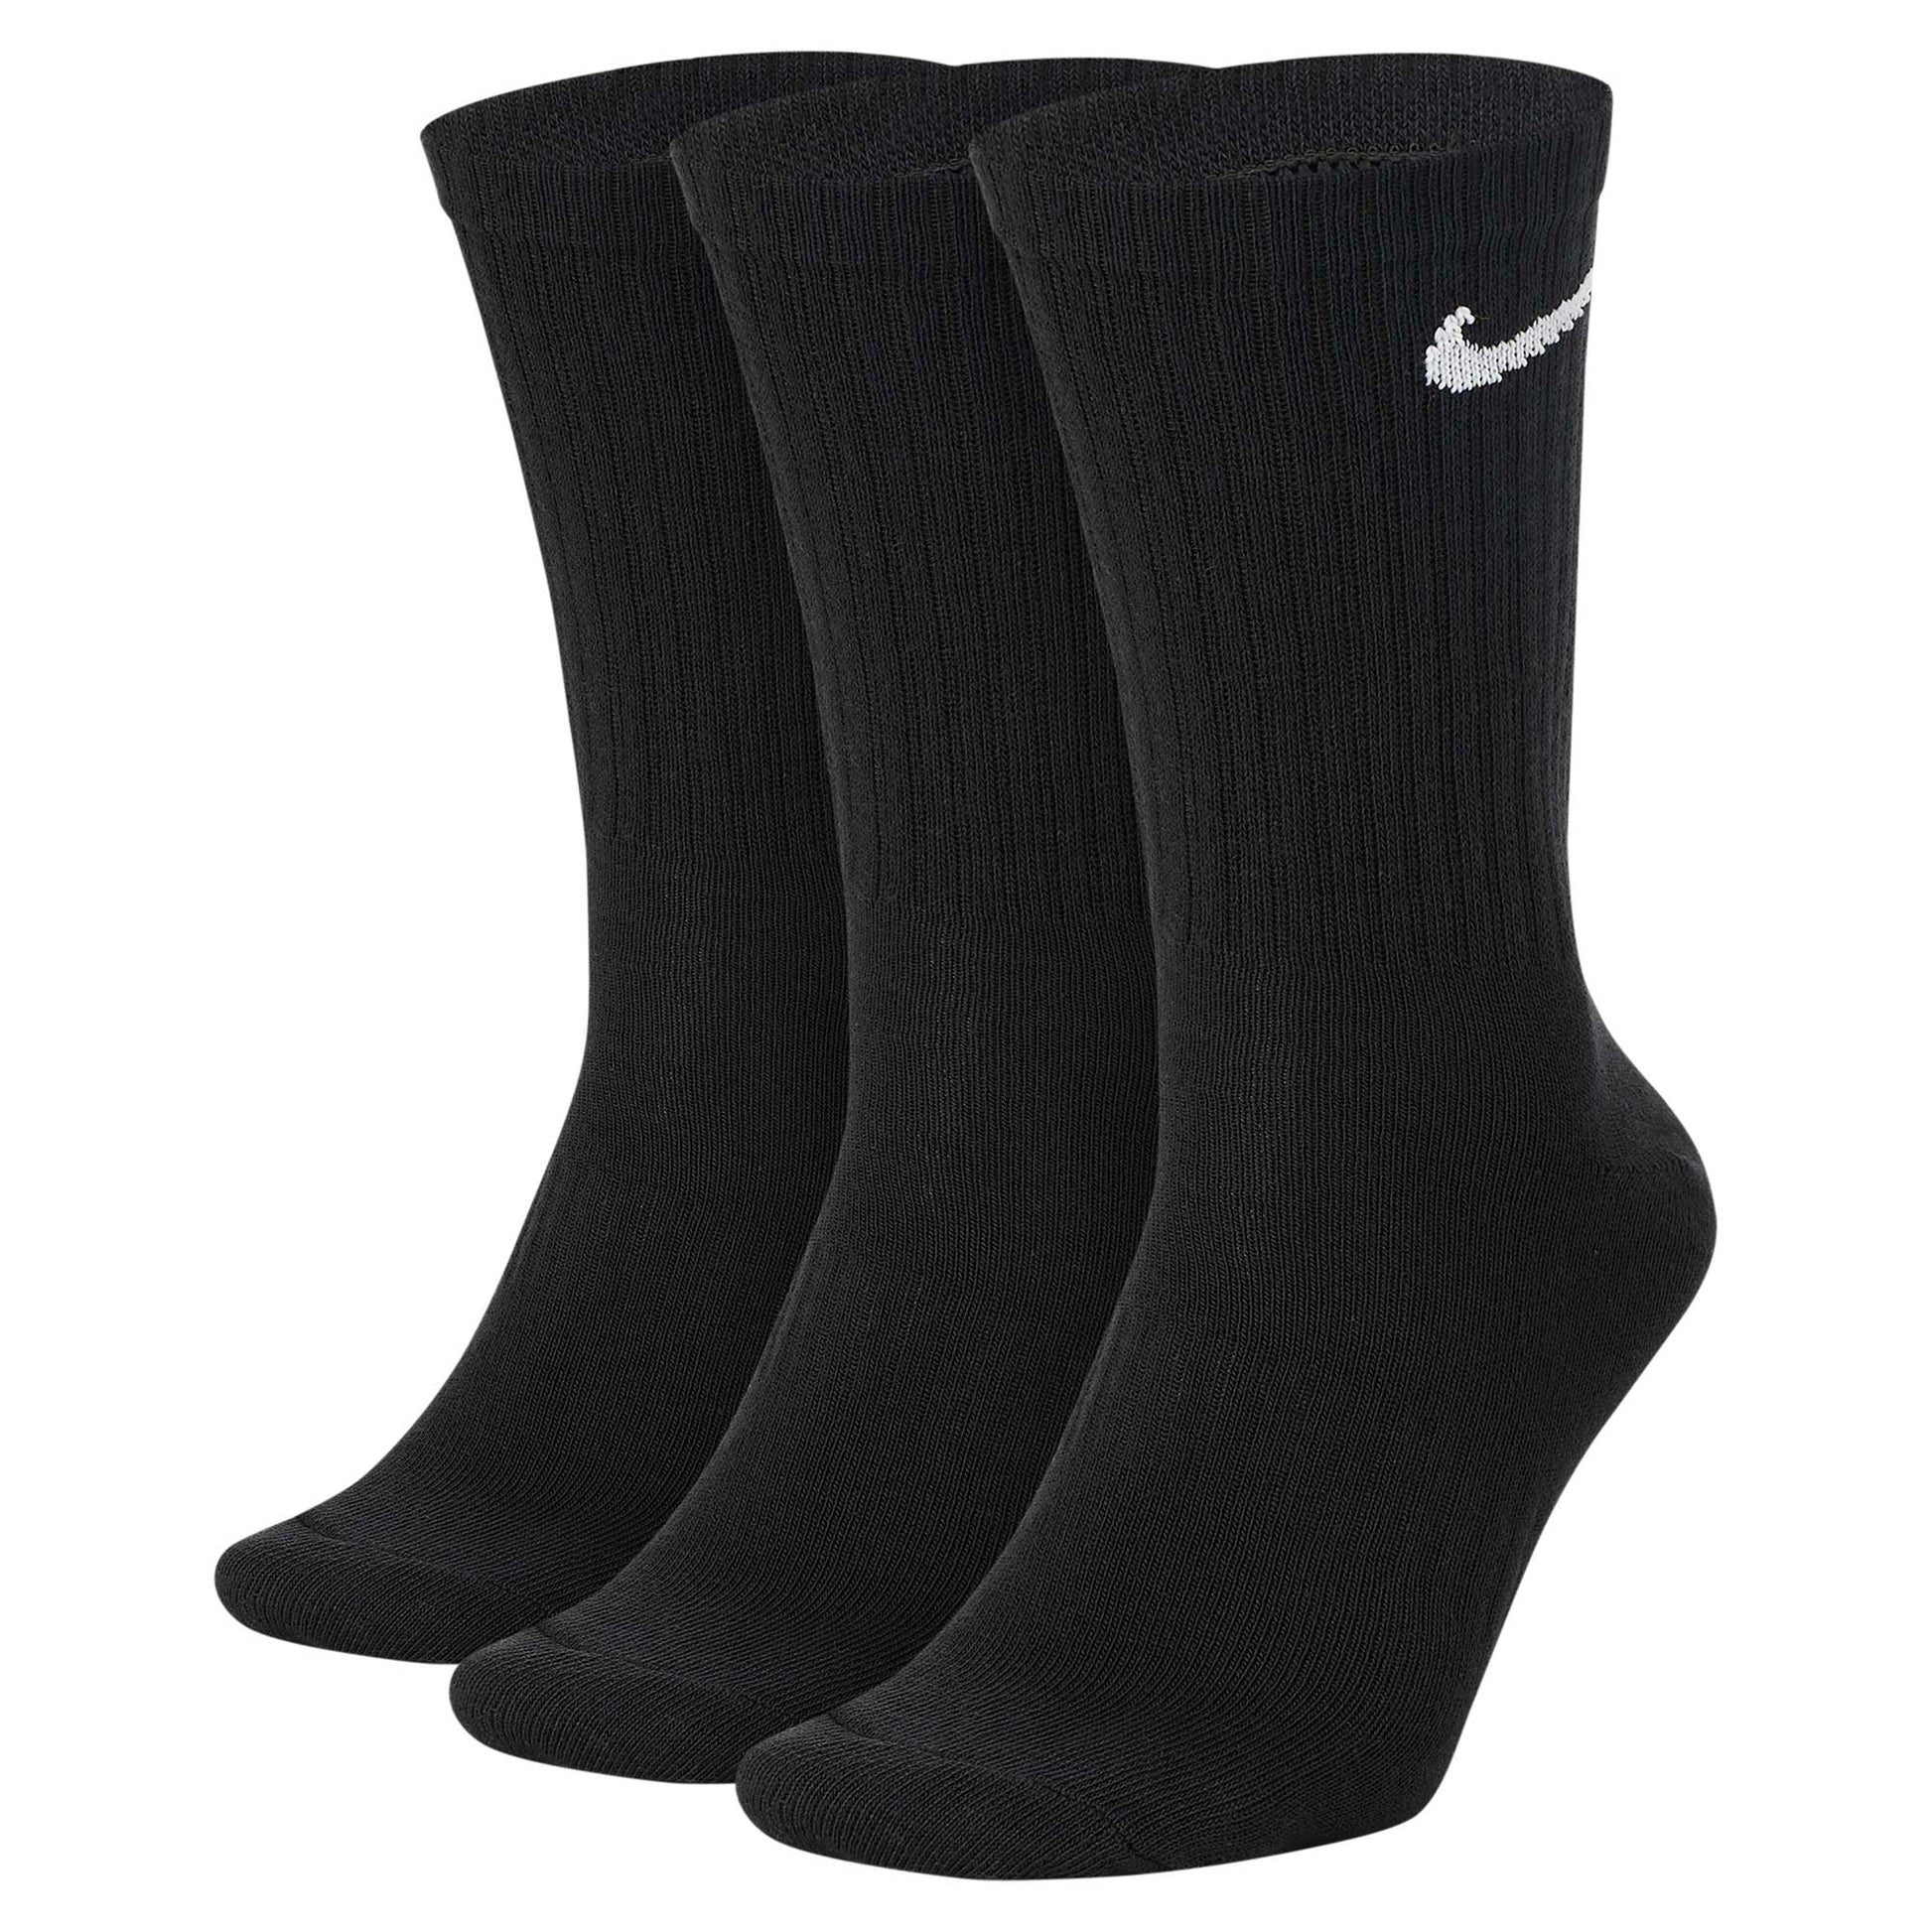 Nike SB Everyday Lightweight Socks (3-Pack, black/white), black/white - Tiki Room Skateboards - 1